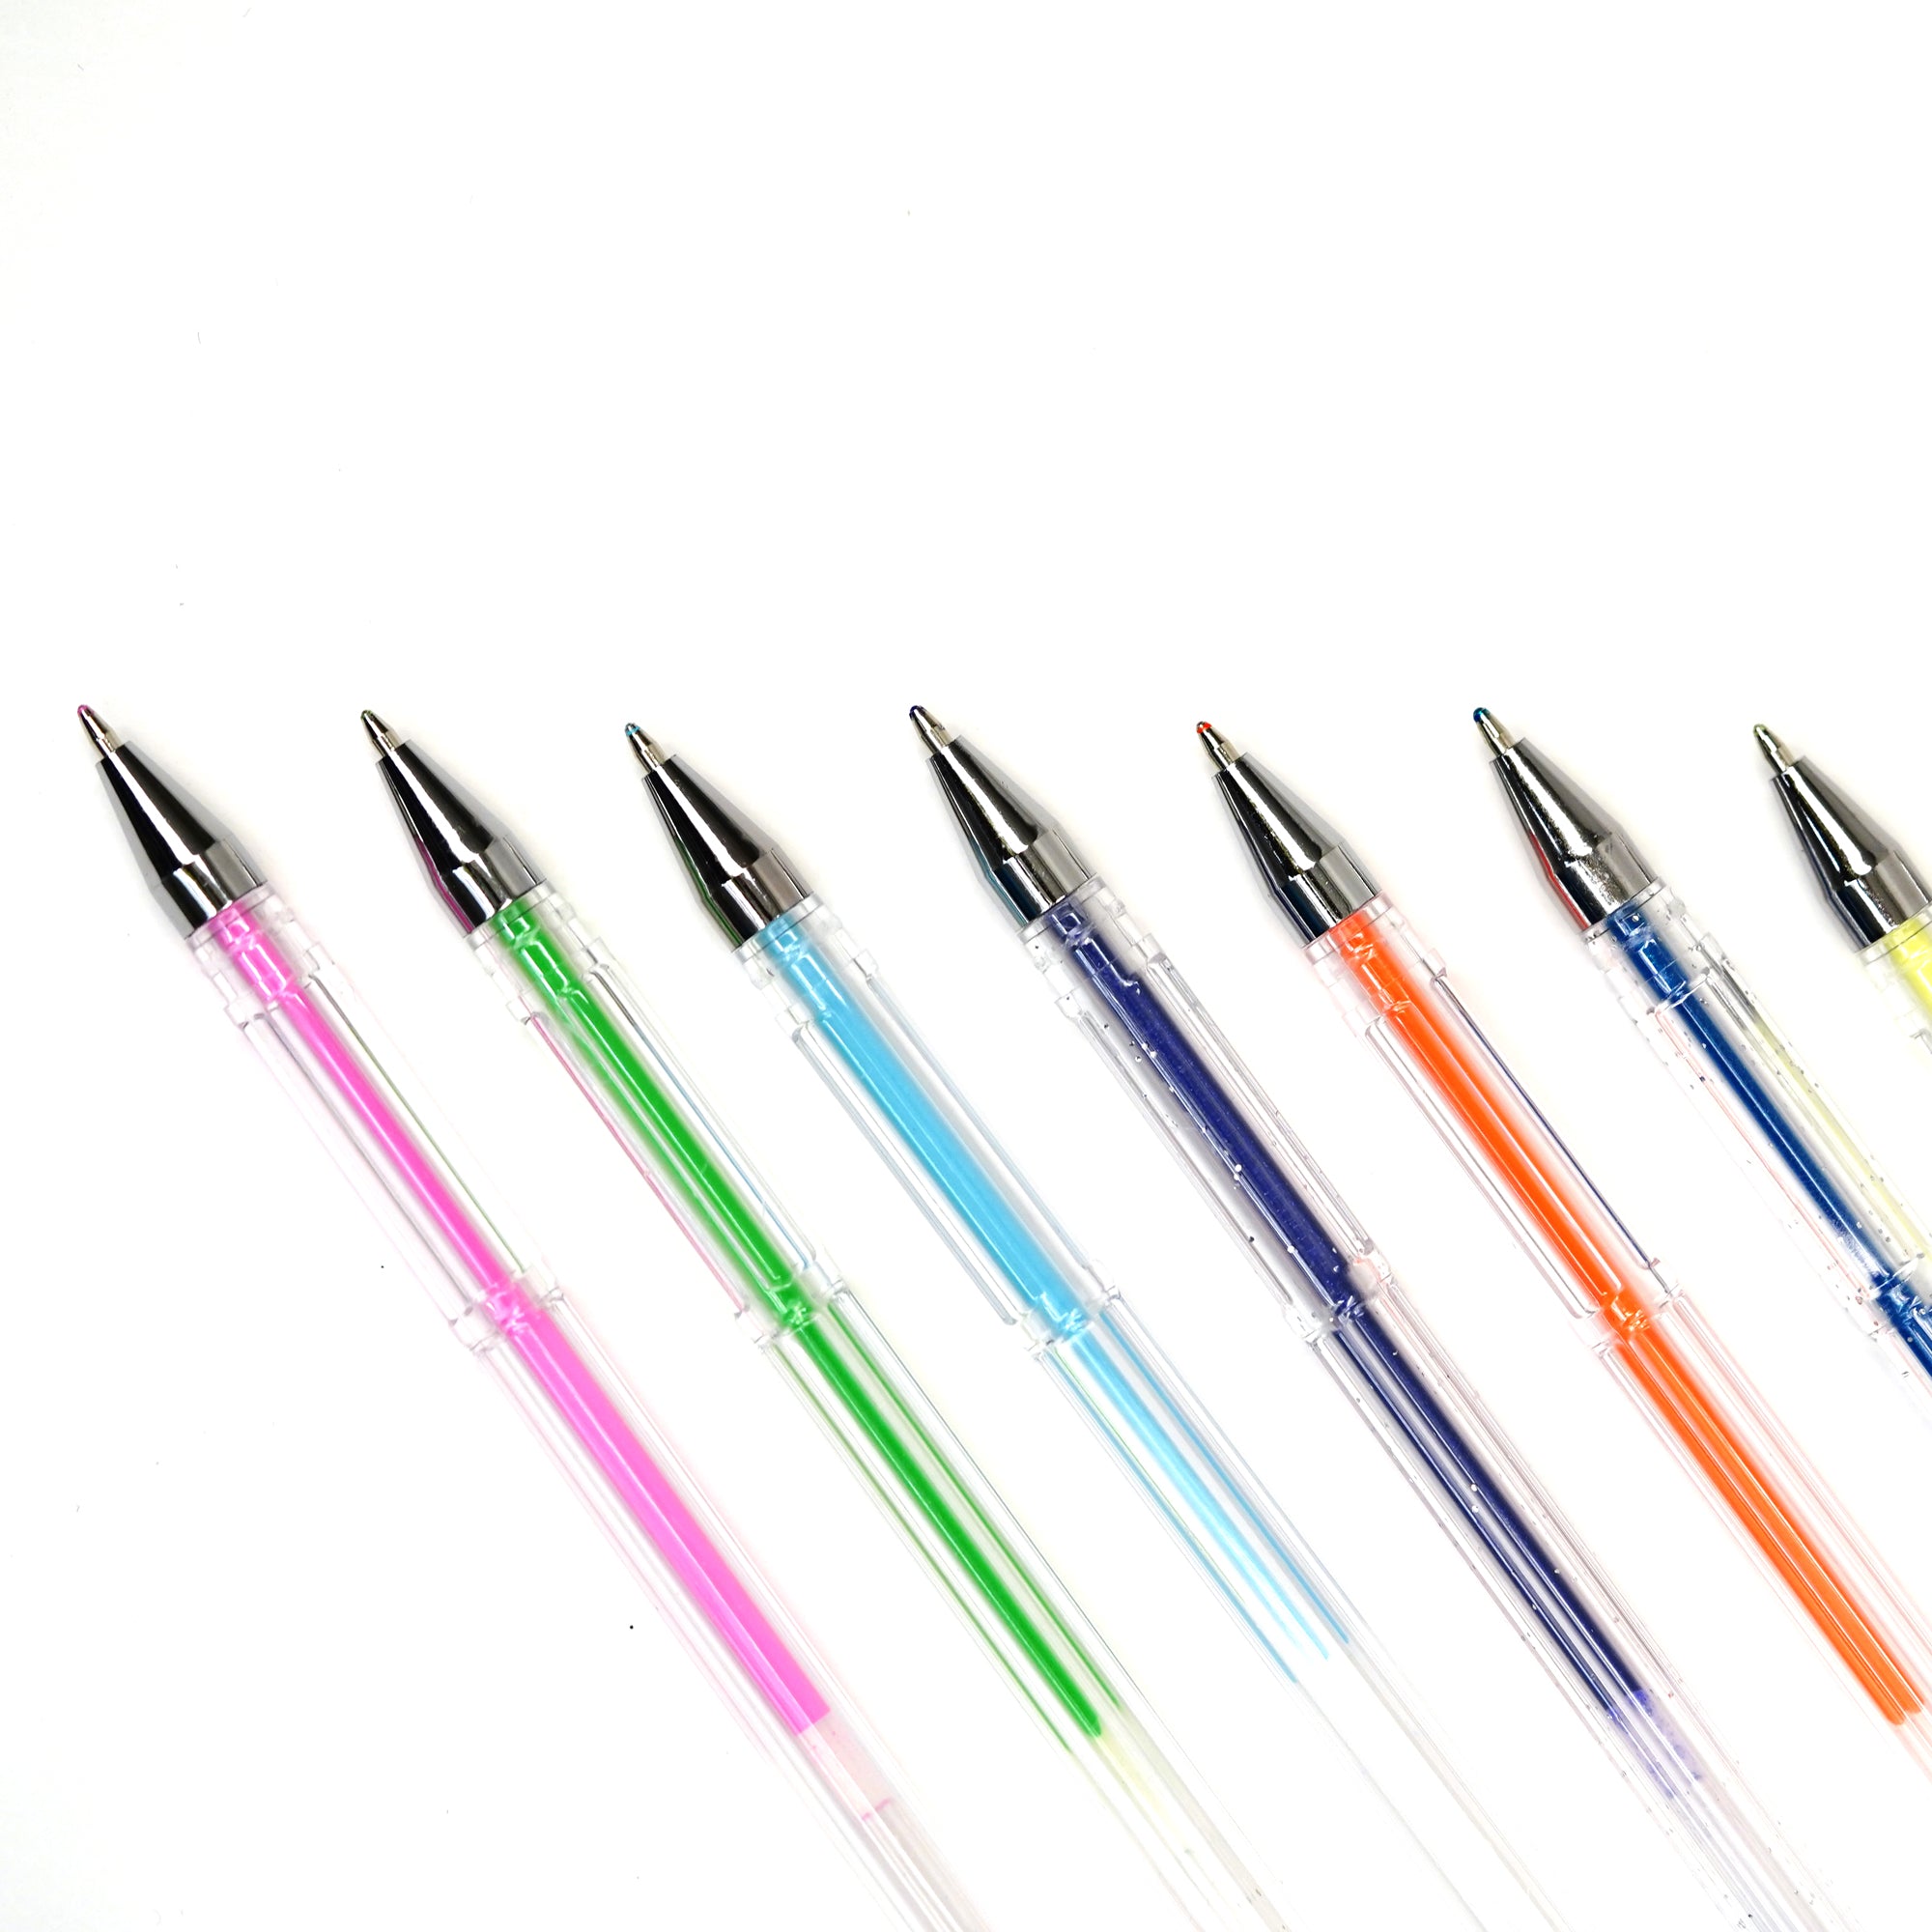 24 pcs Color Gel Neon Pen Set | Multicolor Ballpoint Pens for Coloring ,  Writing